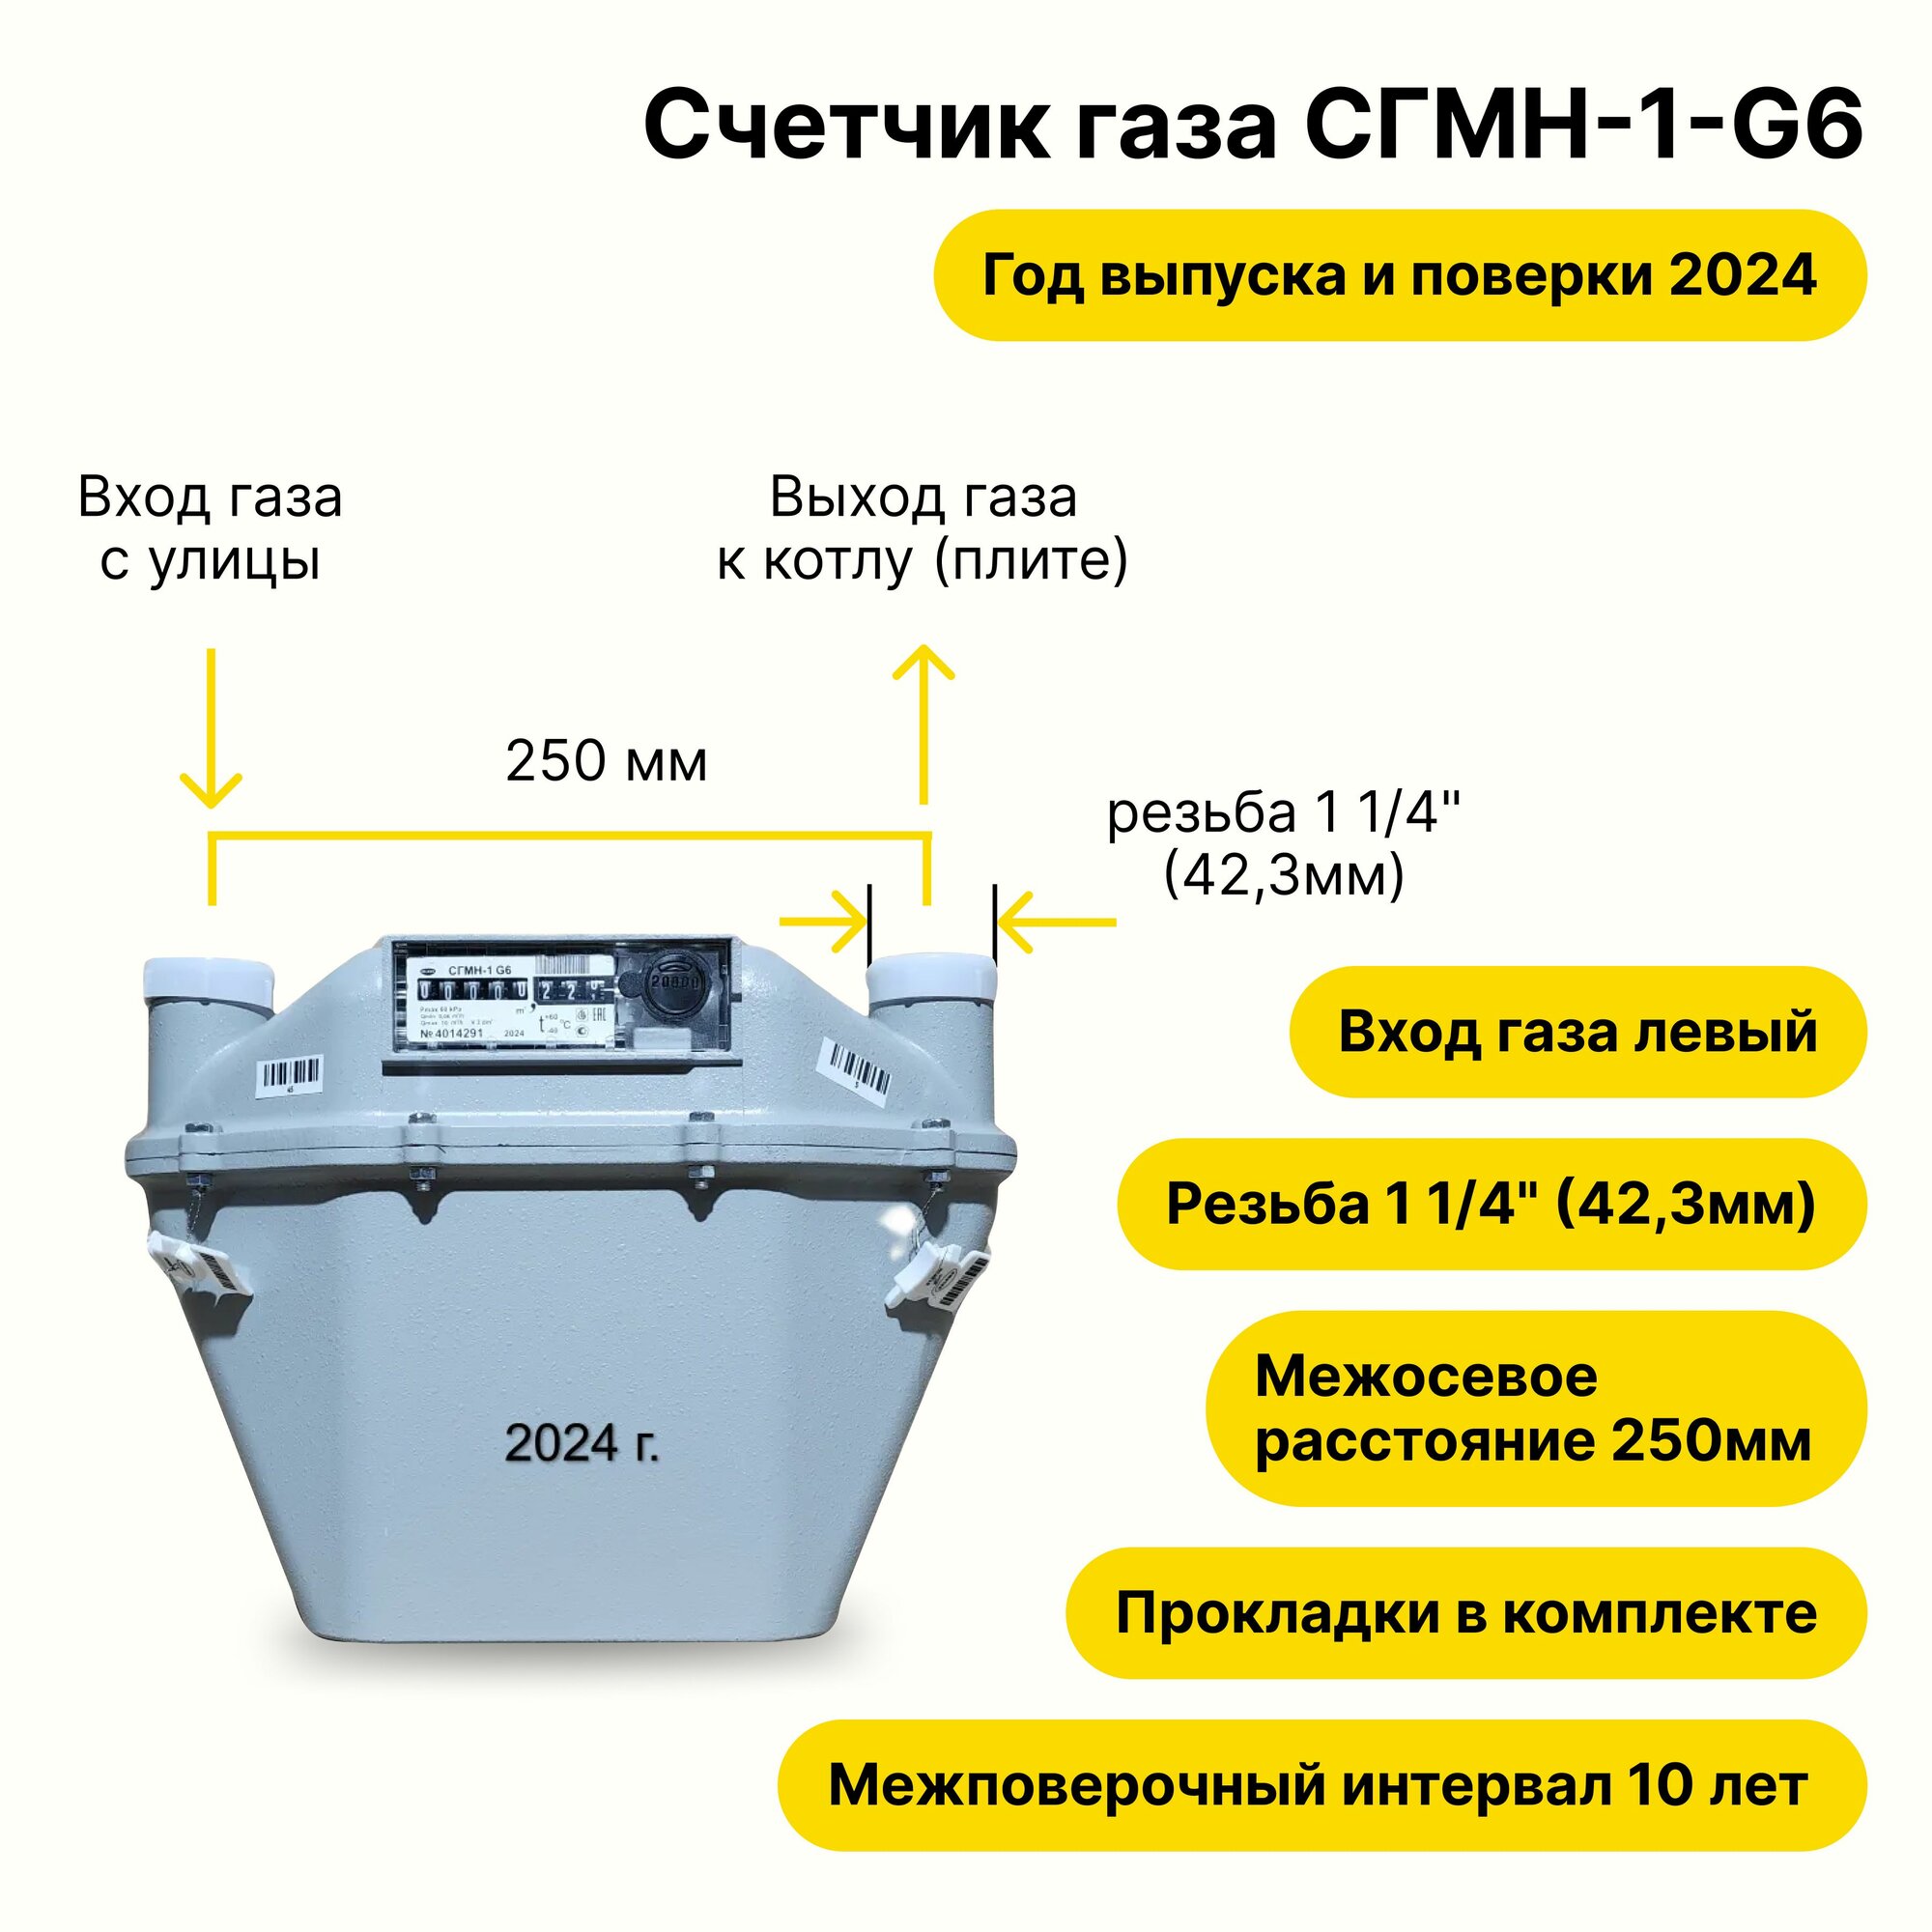 СГМН-1-G6 (вход газа левый -->, 250мм, резьба 1 1/4" как ВК-6, прокладки В комплекте) 2024 года выпуска и поверки